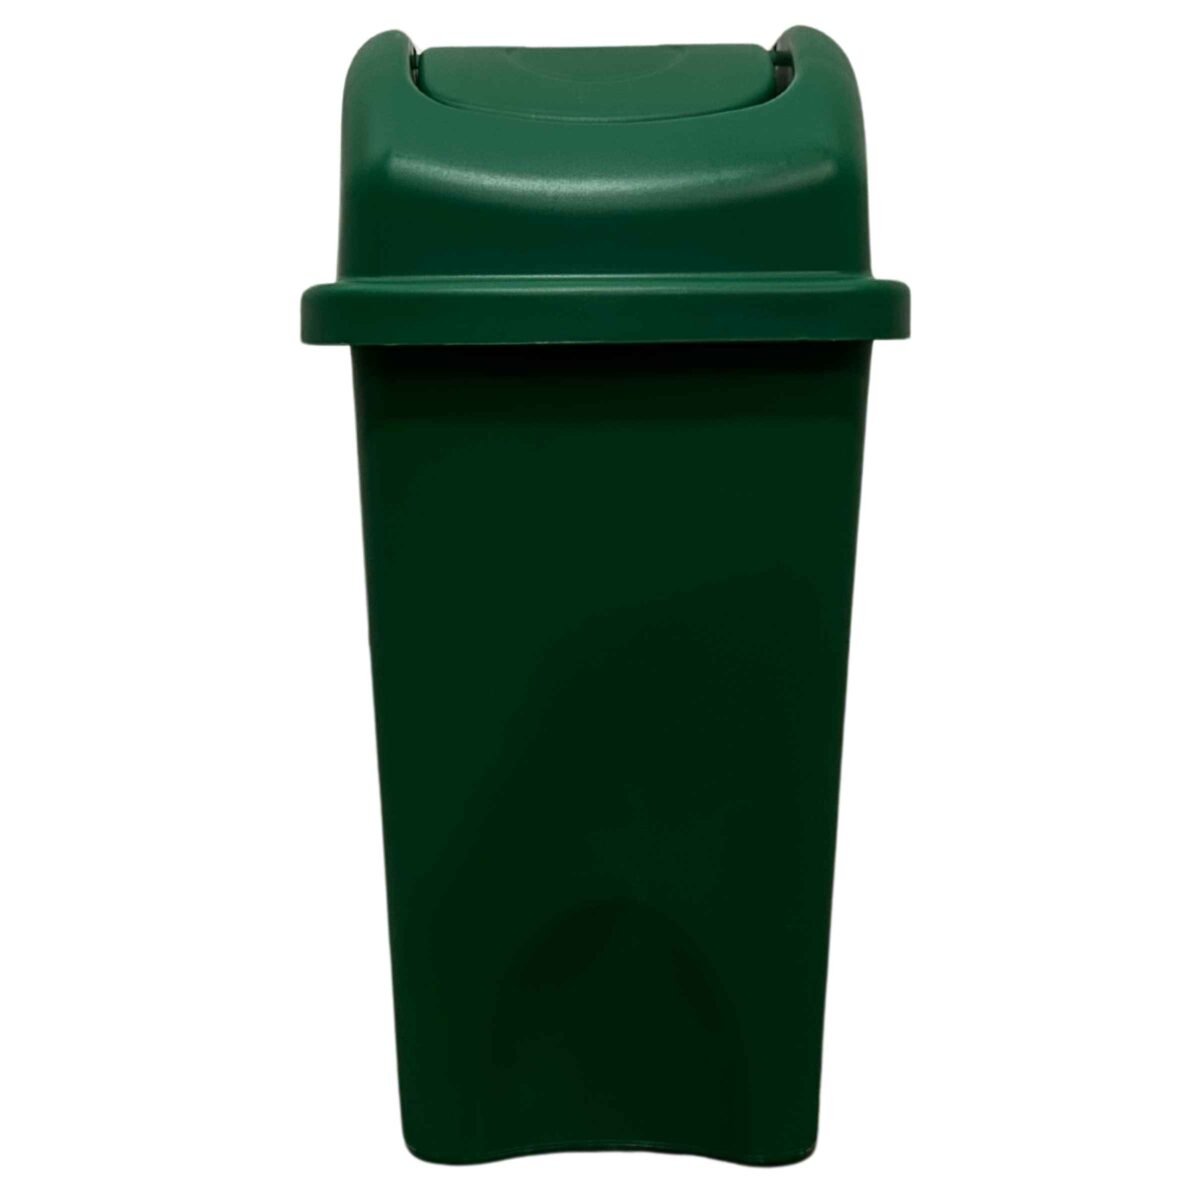 Cesto de basura /Papelera Vaivén Tapa Balancín 10 litros Verde 2